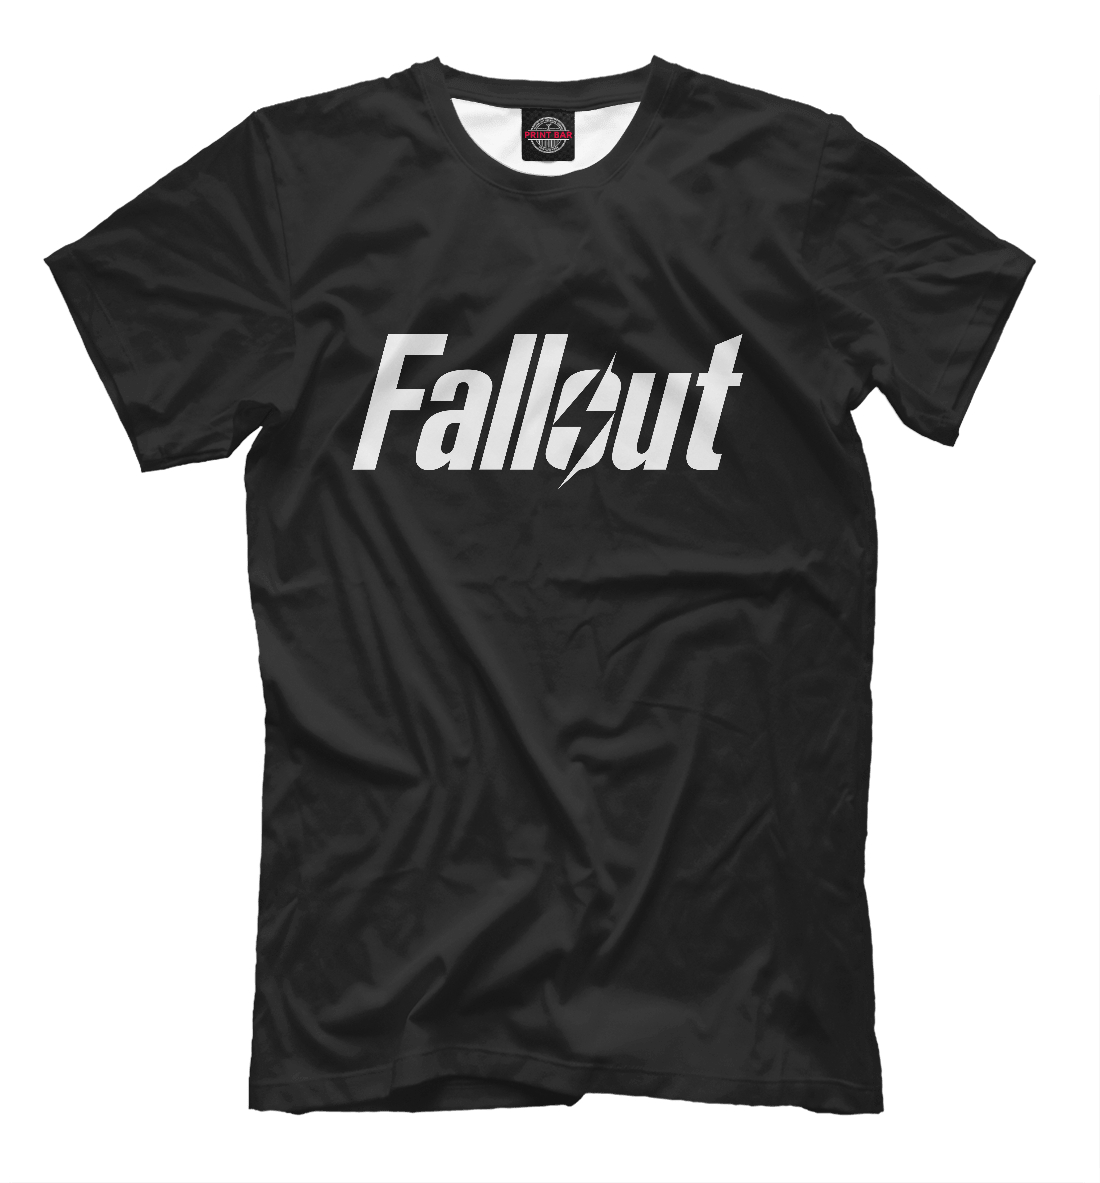 Футболка Fallout для мужчин, артикул: FOT-773500-fut-2mp